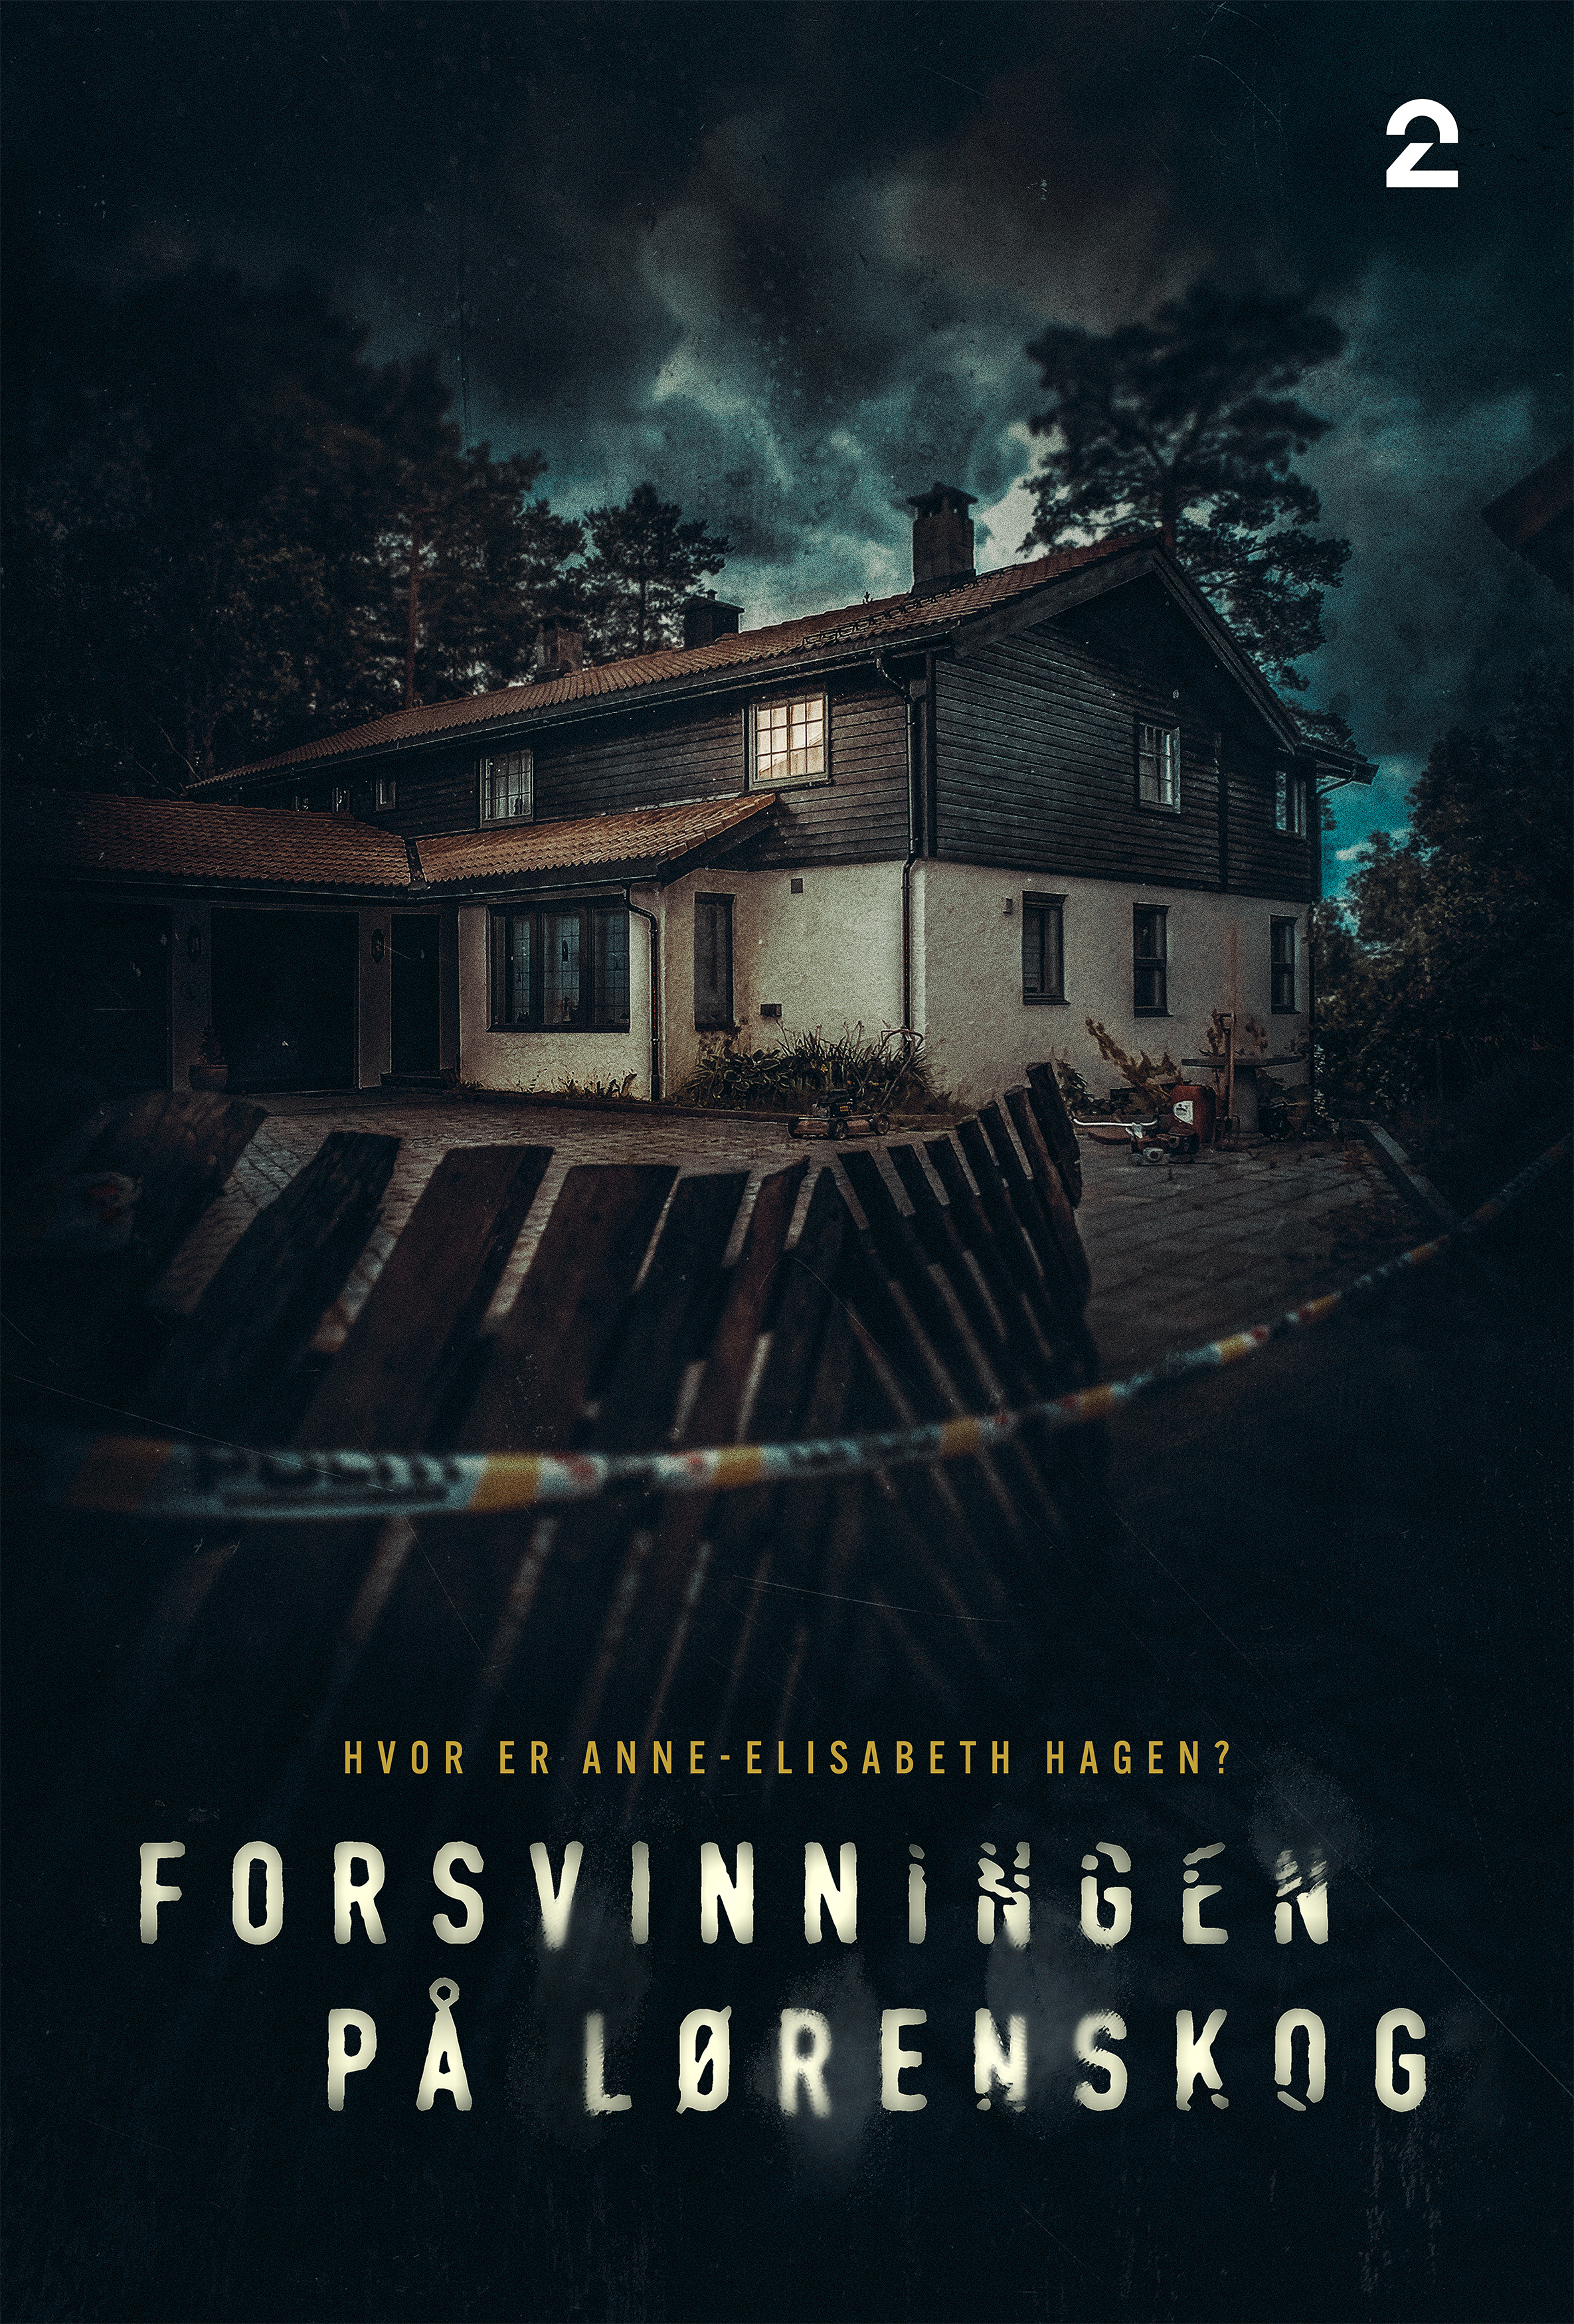 Poster Phim Vụ mất tích ở Lørenskog (The Lørenskog Disappearance)